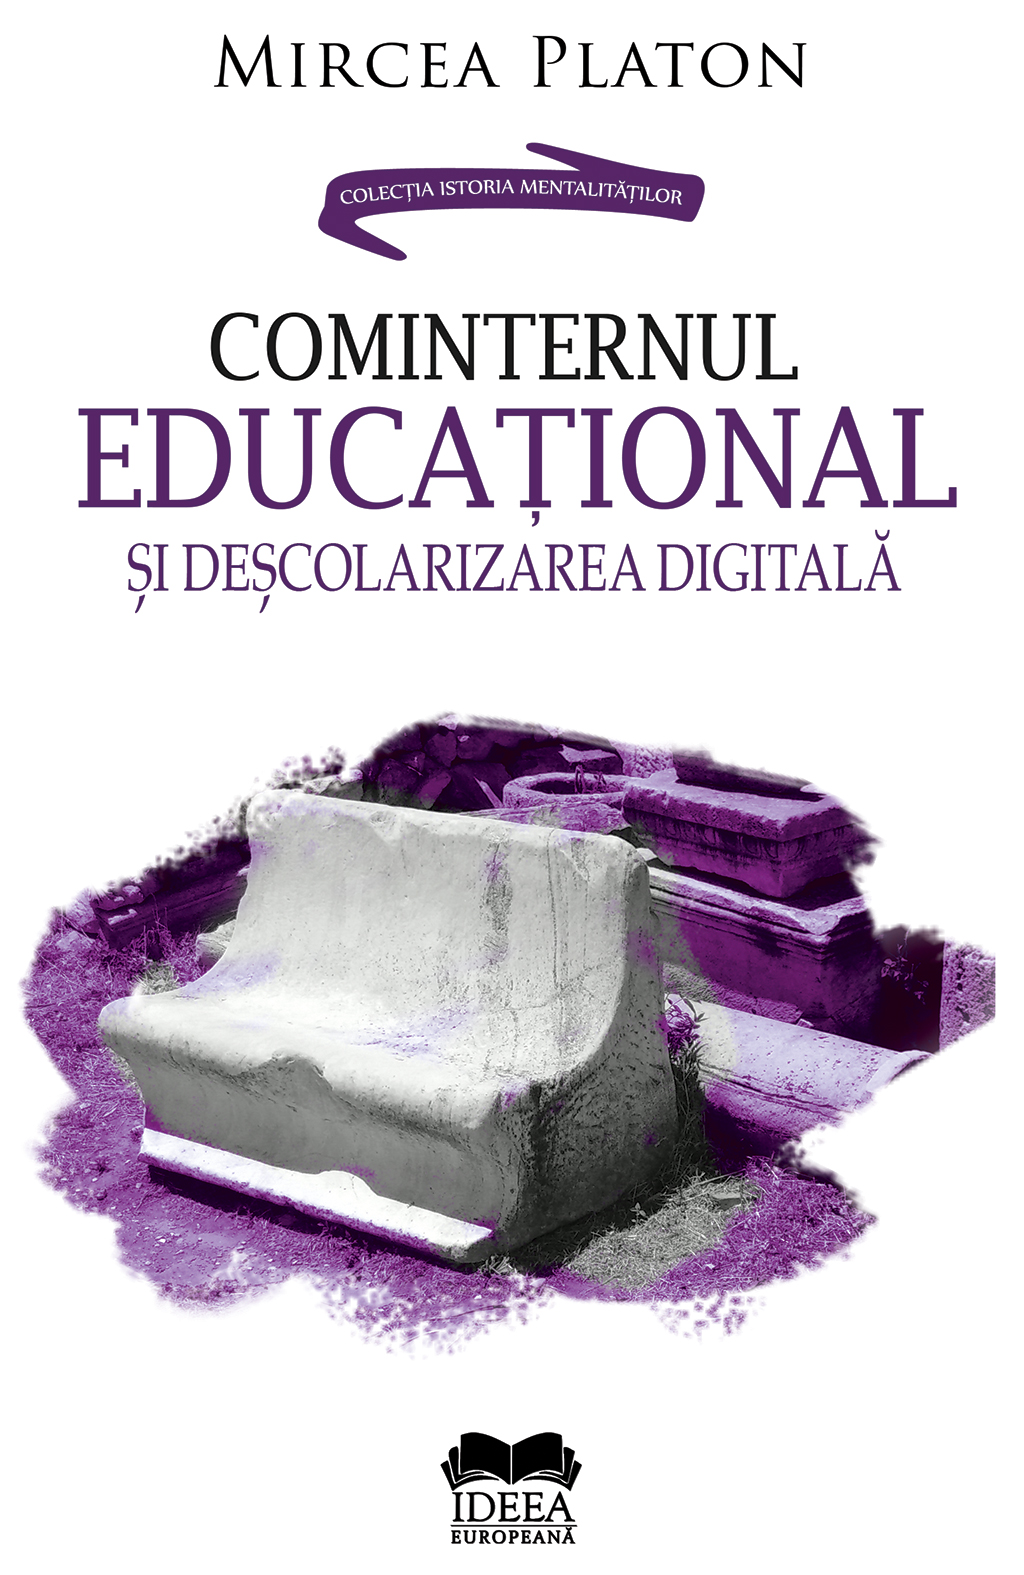 (P) Cominternul educațional și deșcolarizarea digitală – Mircea Platon – MAGAZIN CRITIC